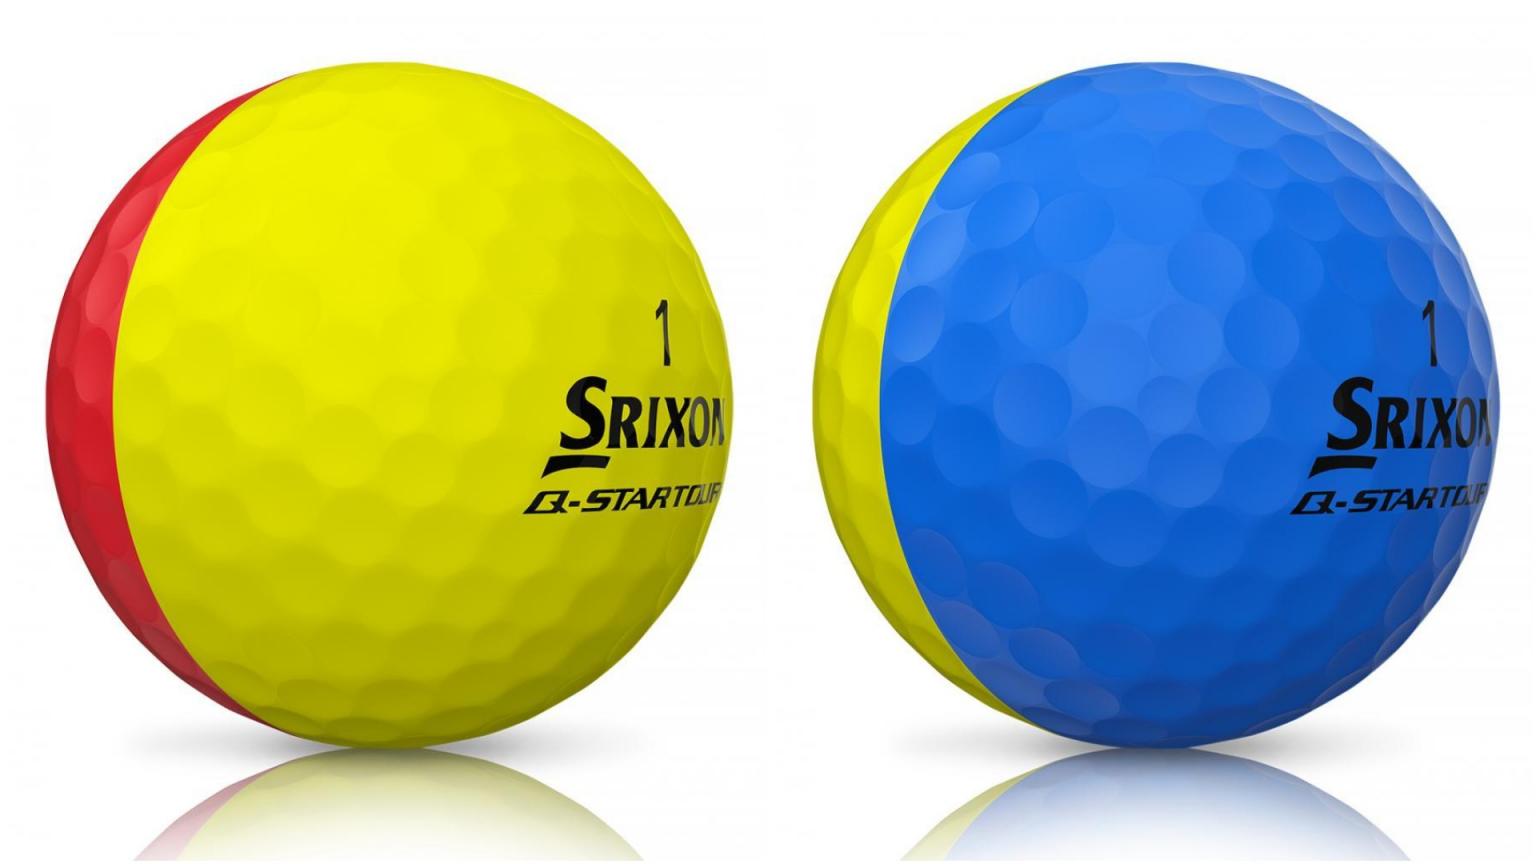 Srixon QSTAR TOUR DIVIDE golf balls start seeing DOUBLE! GolfMagic